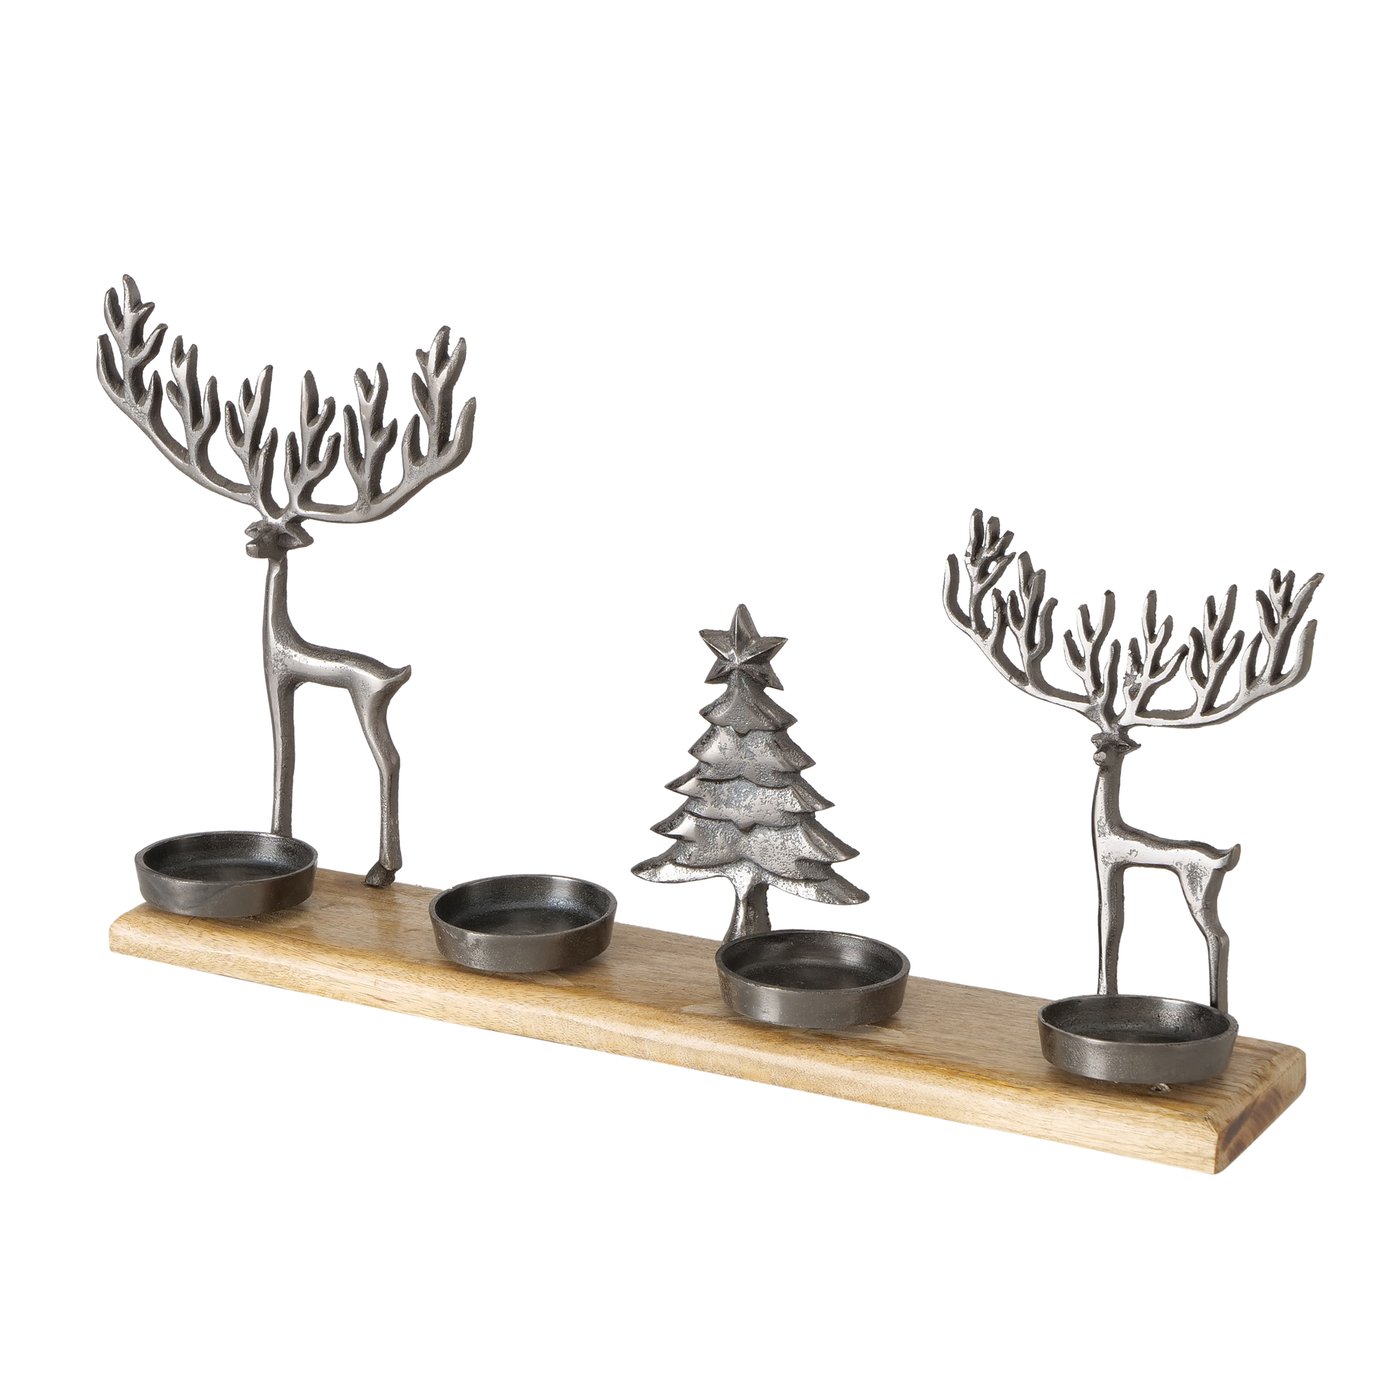 Adventstablett Kerzenhalter mit Hirsch grau braun, 2027966, 4066076125364, Boltze Xmas online kaufen, Weihnachtliche Hirschdekoration